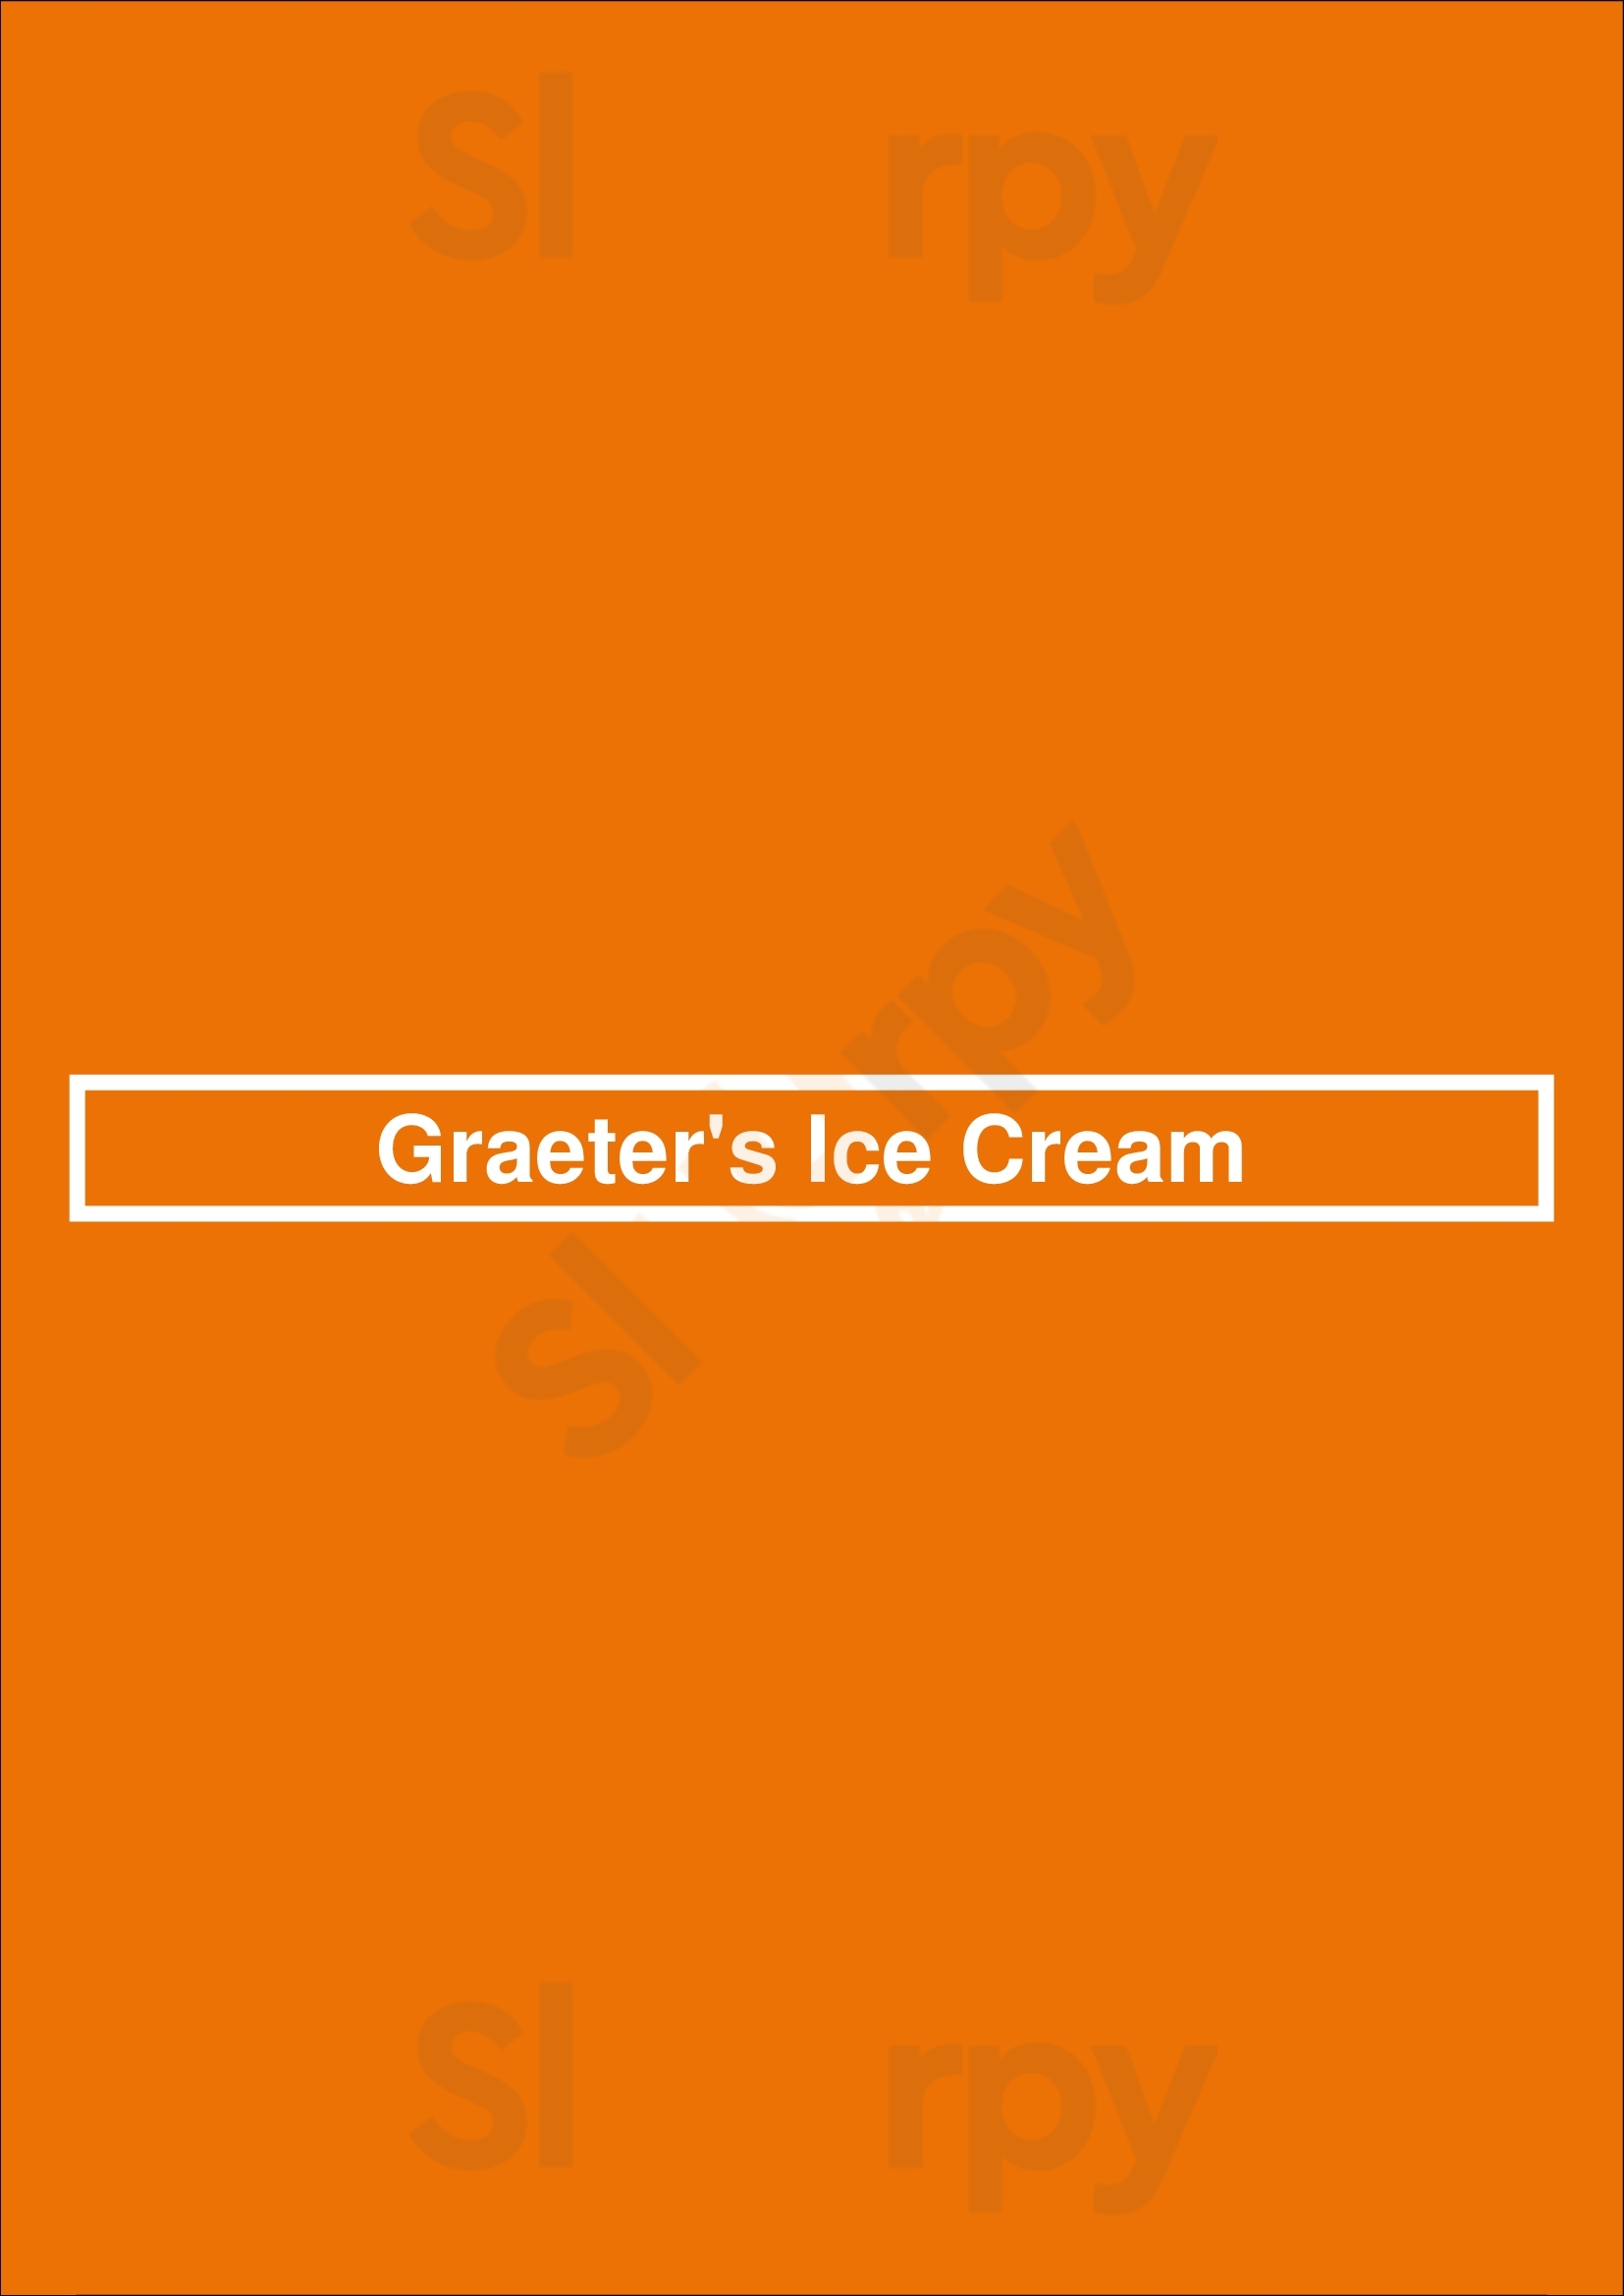 Graeter's Ice Cream Columbus Menu - 1